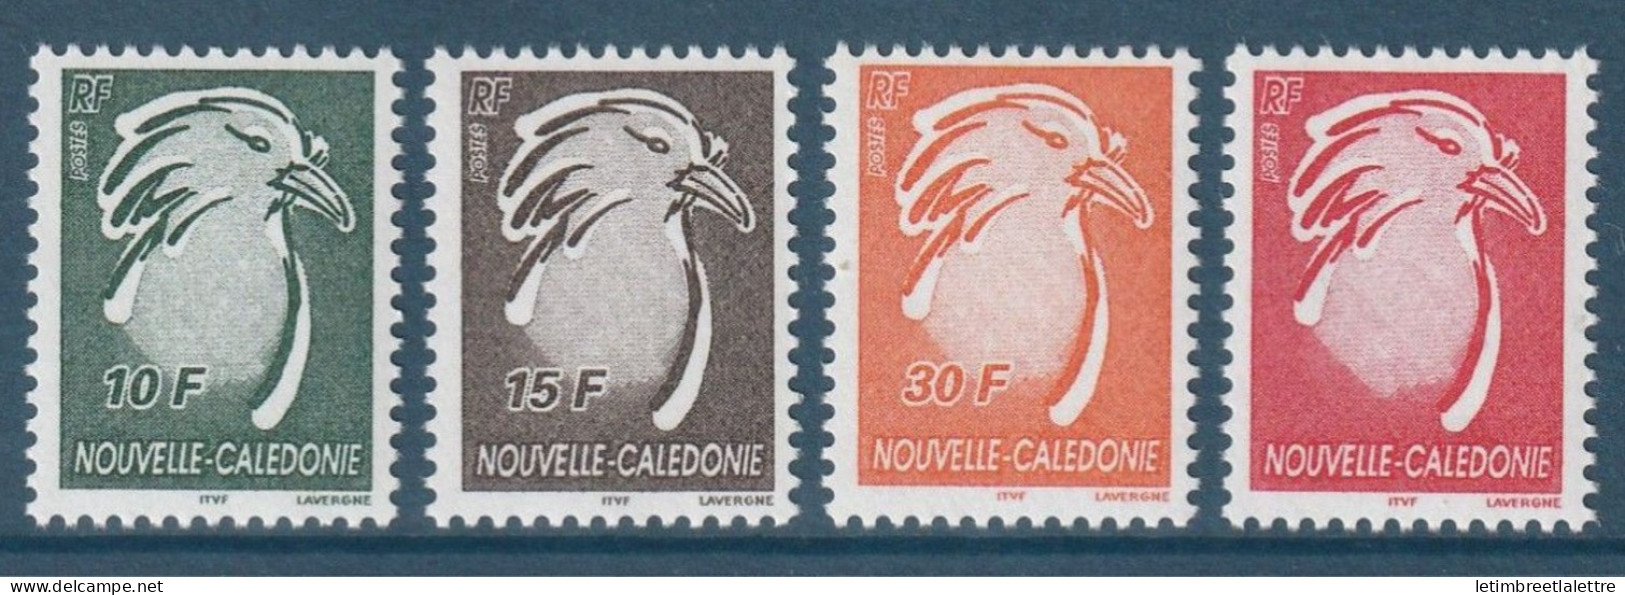 Nouvelle Calédonie - YT N° 885 à 888 ** - Neuf Sans Charnière - 2003 - Unused Stamps